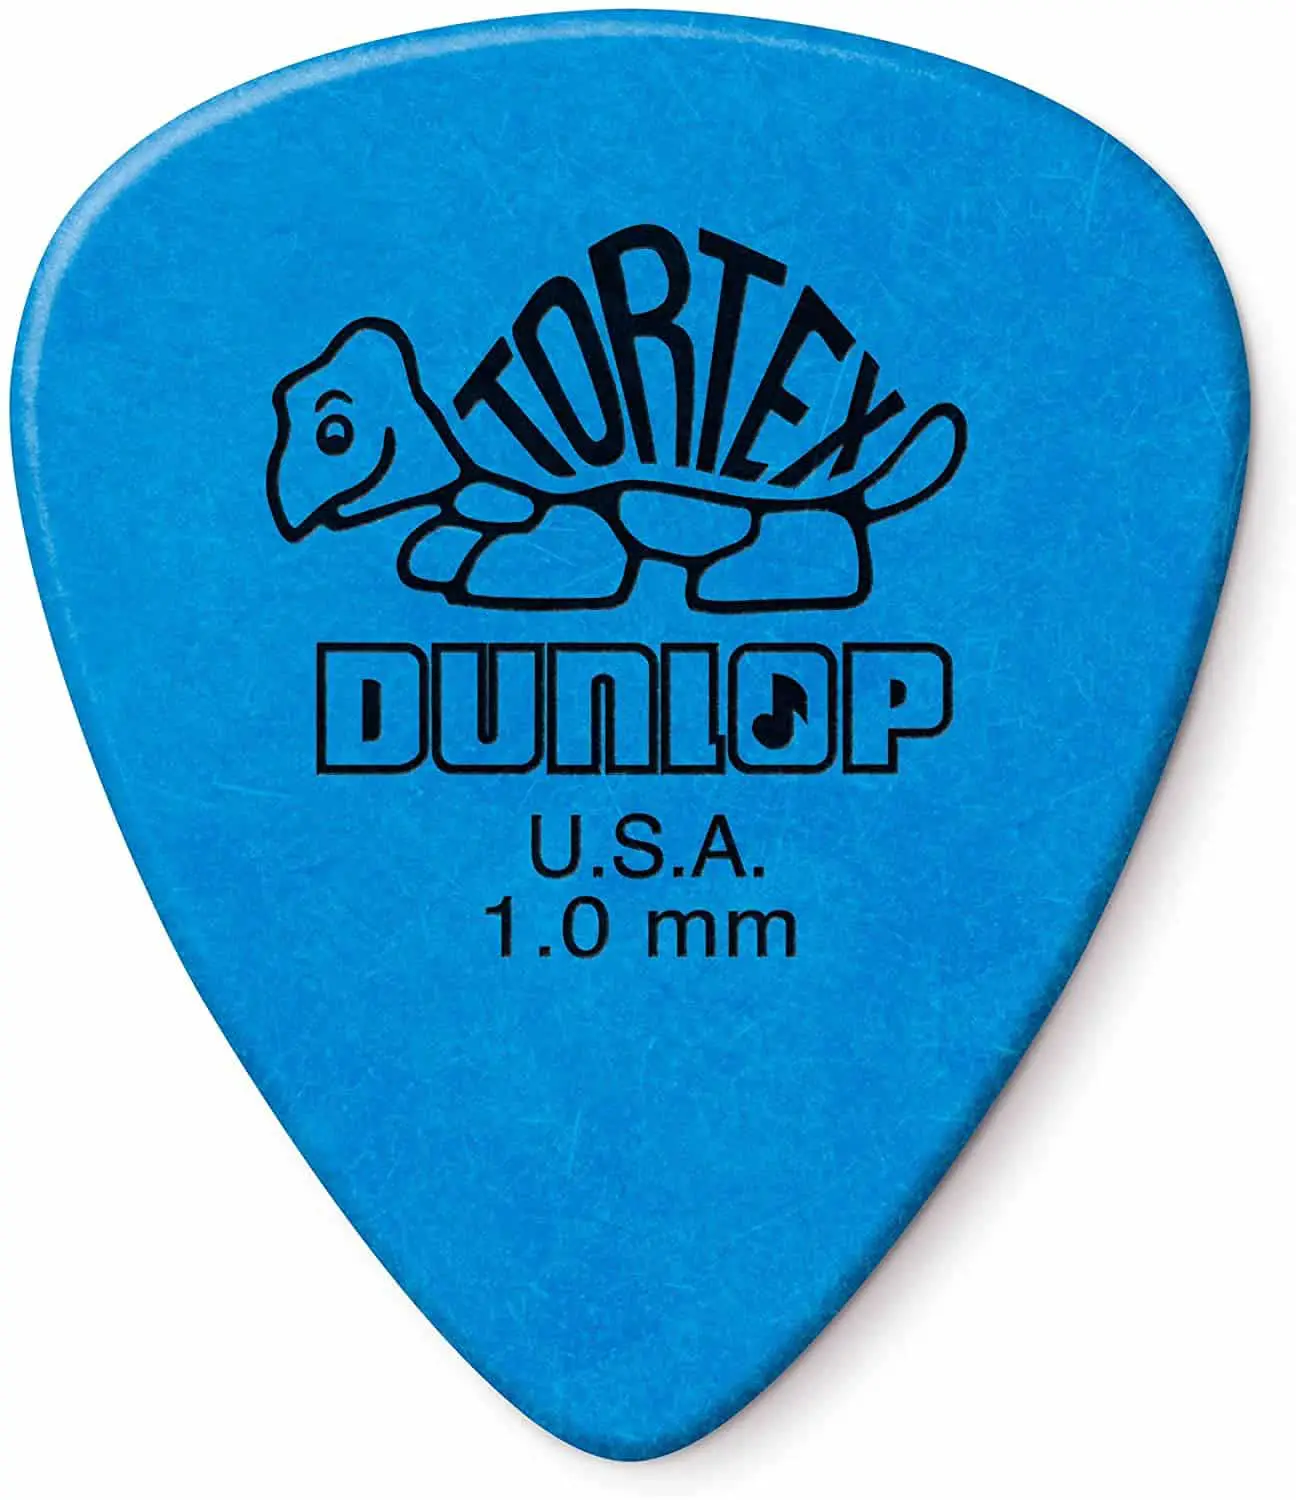 Najpogosteje uporabljene igle pri hibridnih obiralcih: Dunlop Tortex 1.0 mm